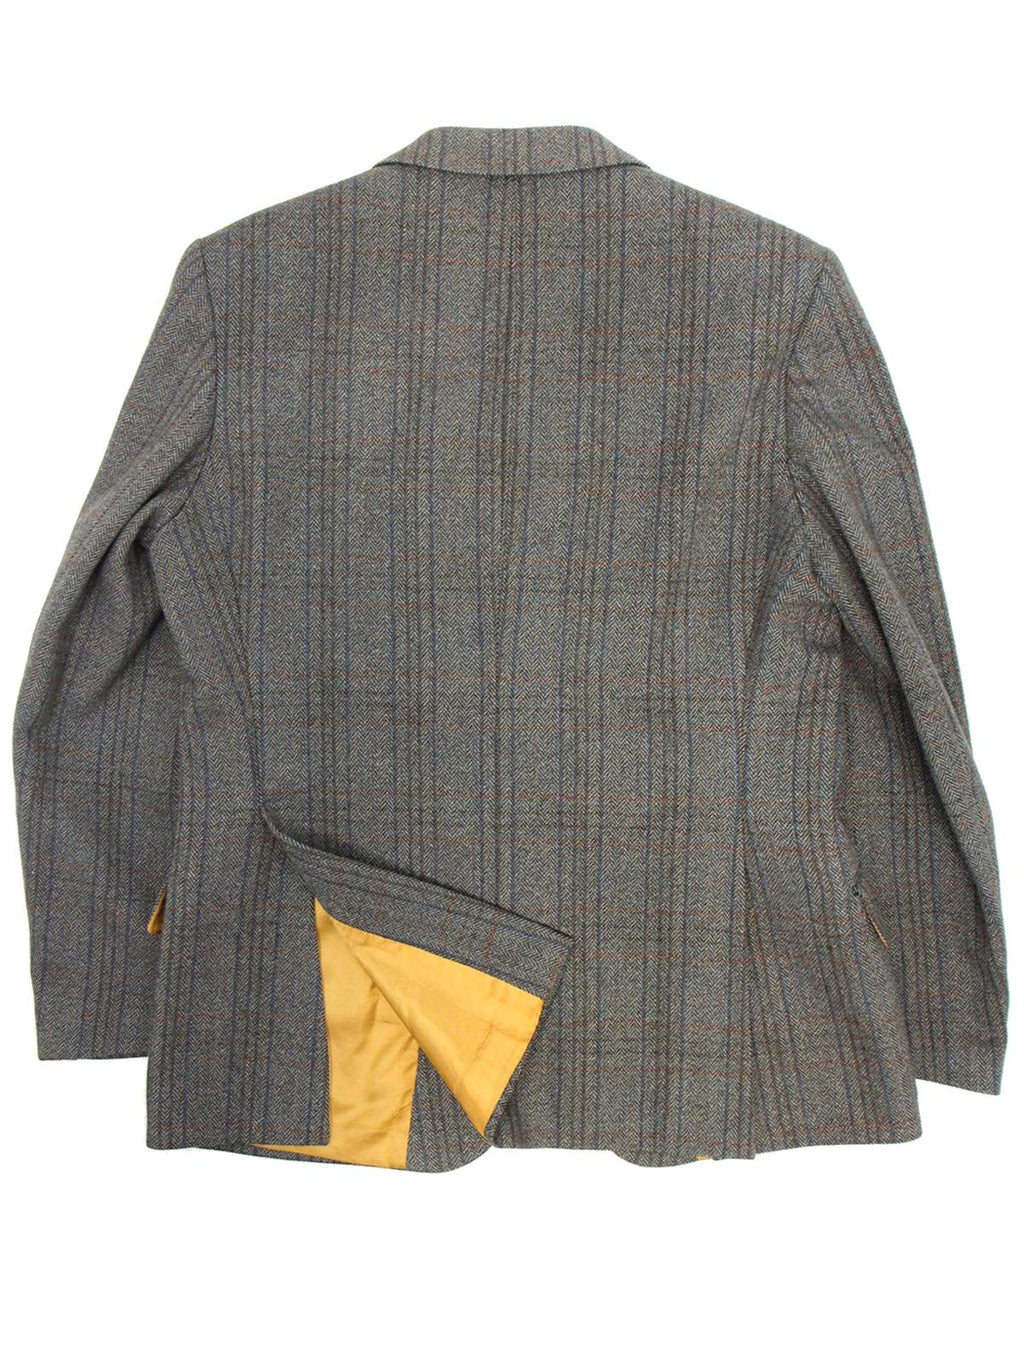 Vintage Saxony Herringbone Check Tweed Jacket – RevivalVintage